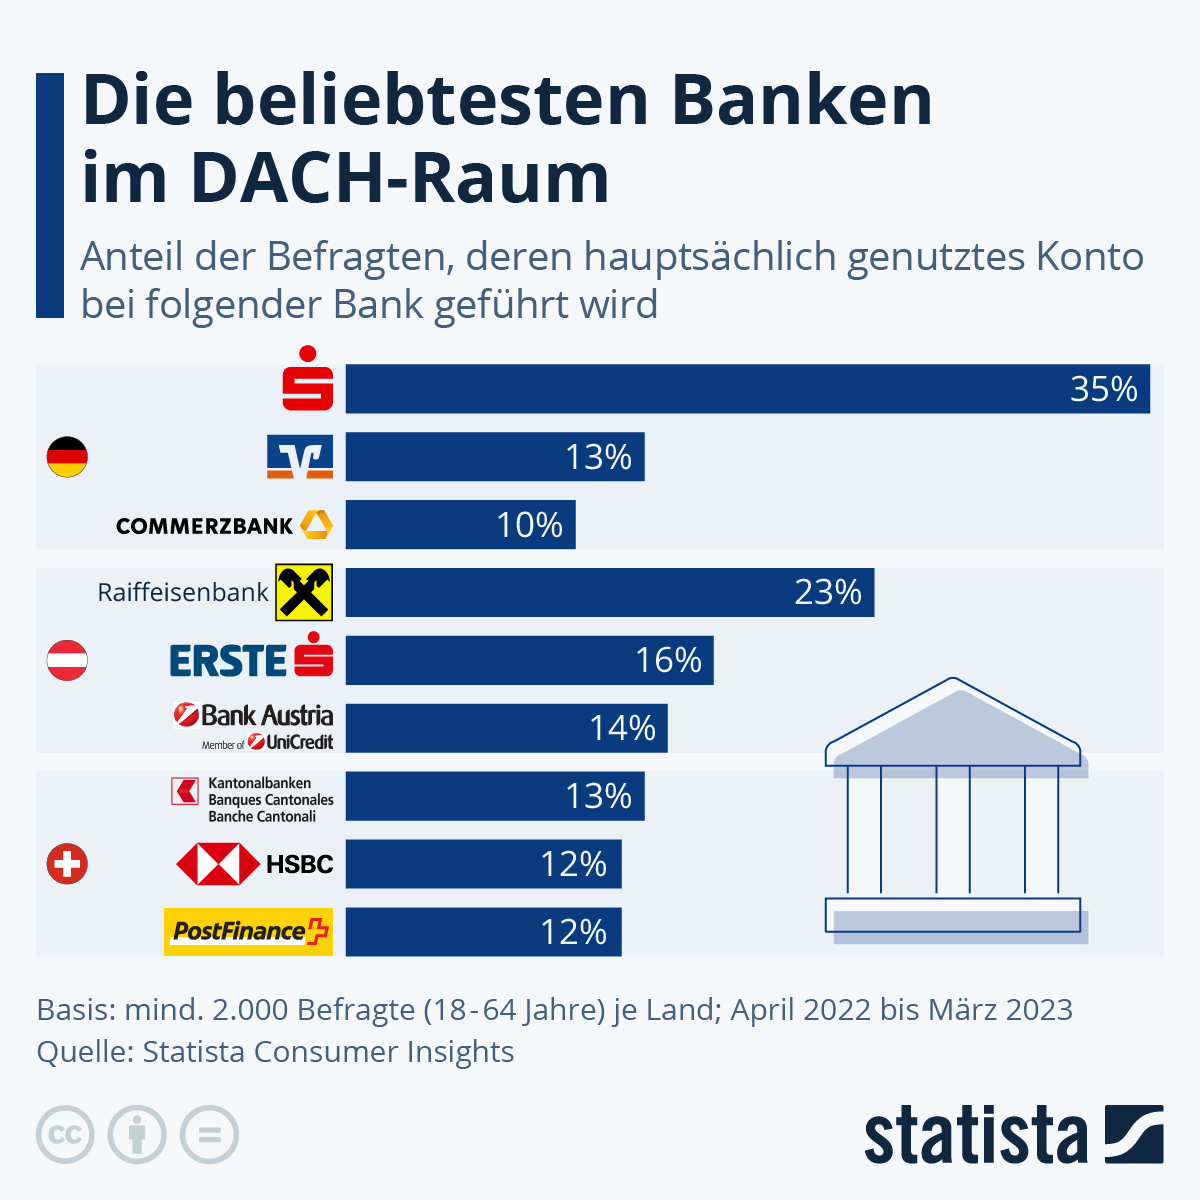 Die beliebtesten Banken im DACH-Raum